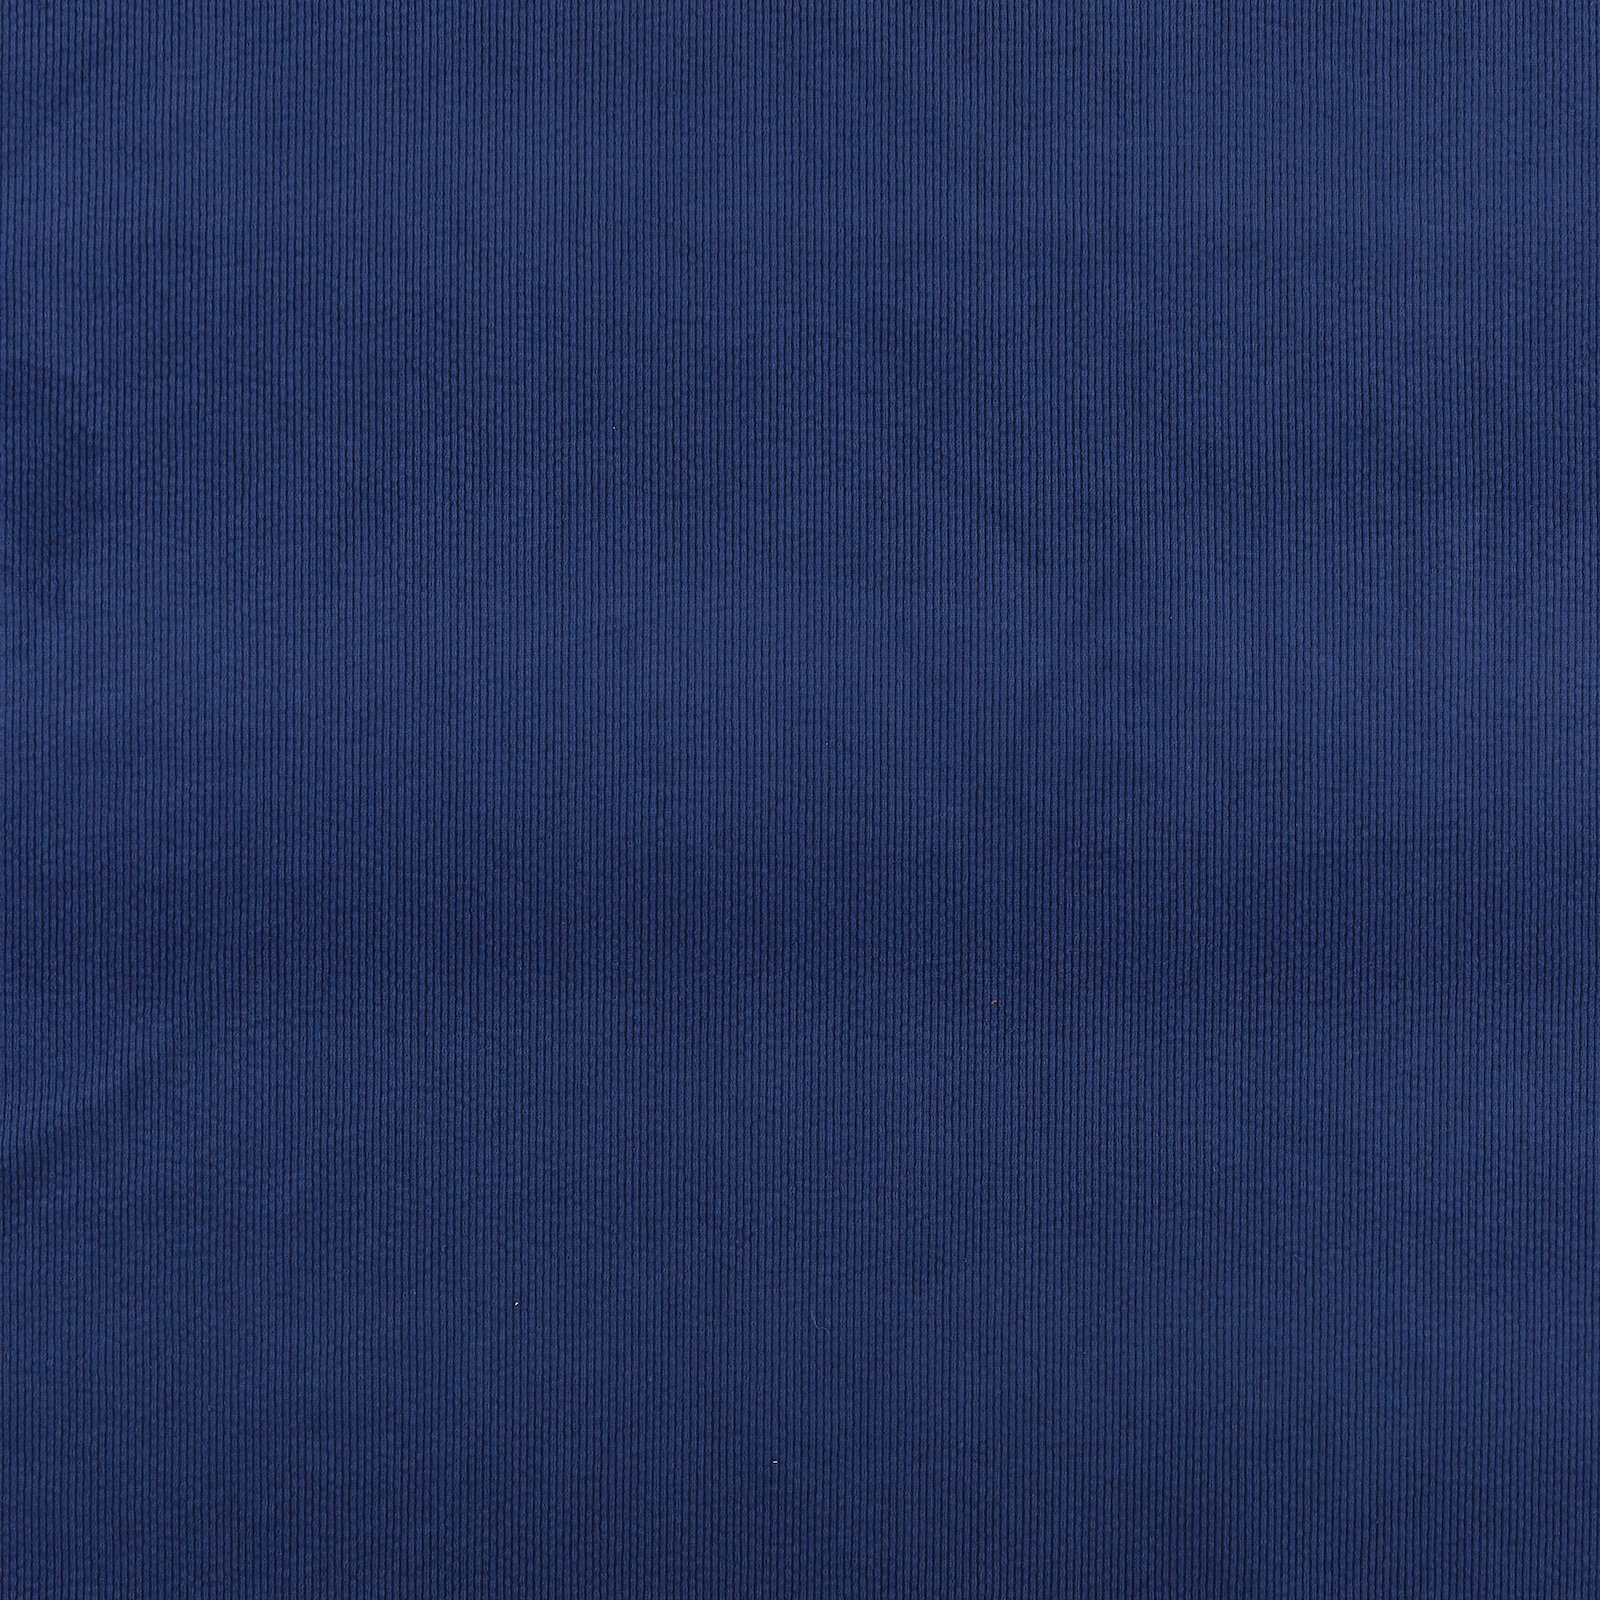 Corduroy 6 wales w str dark navy blue 430870_pack_solid